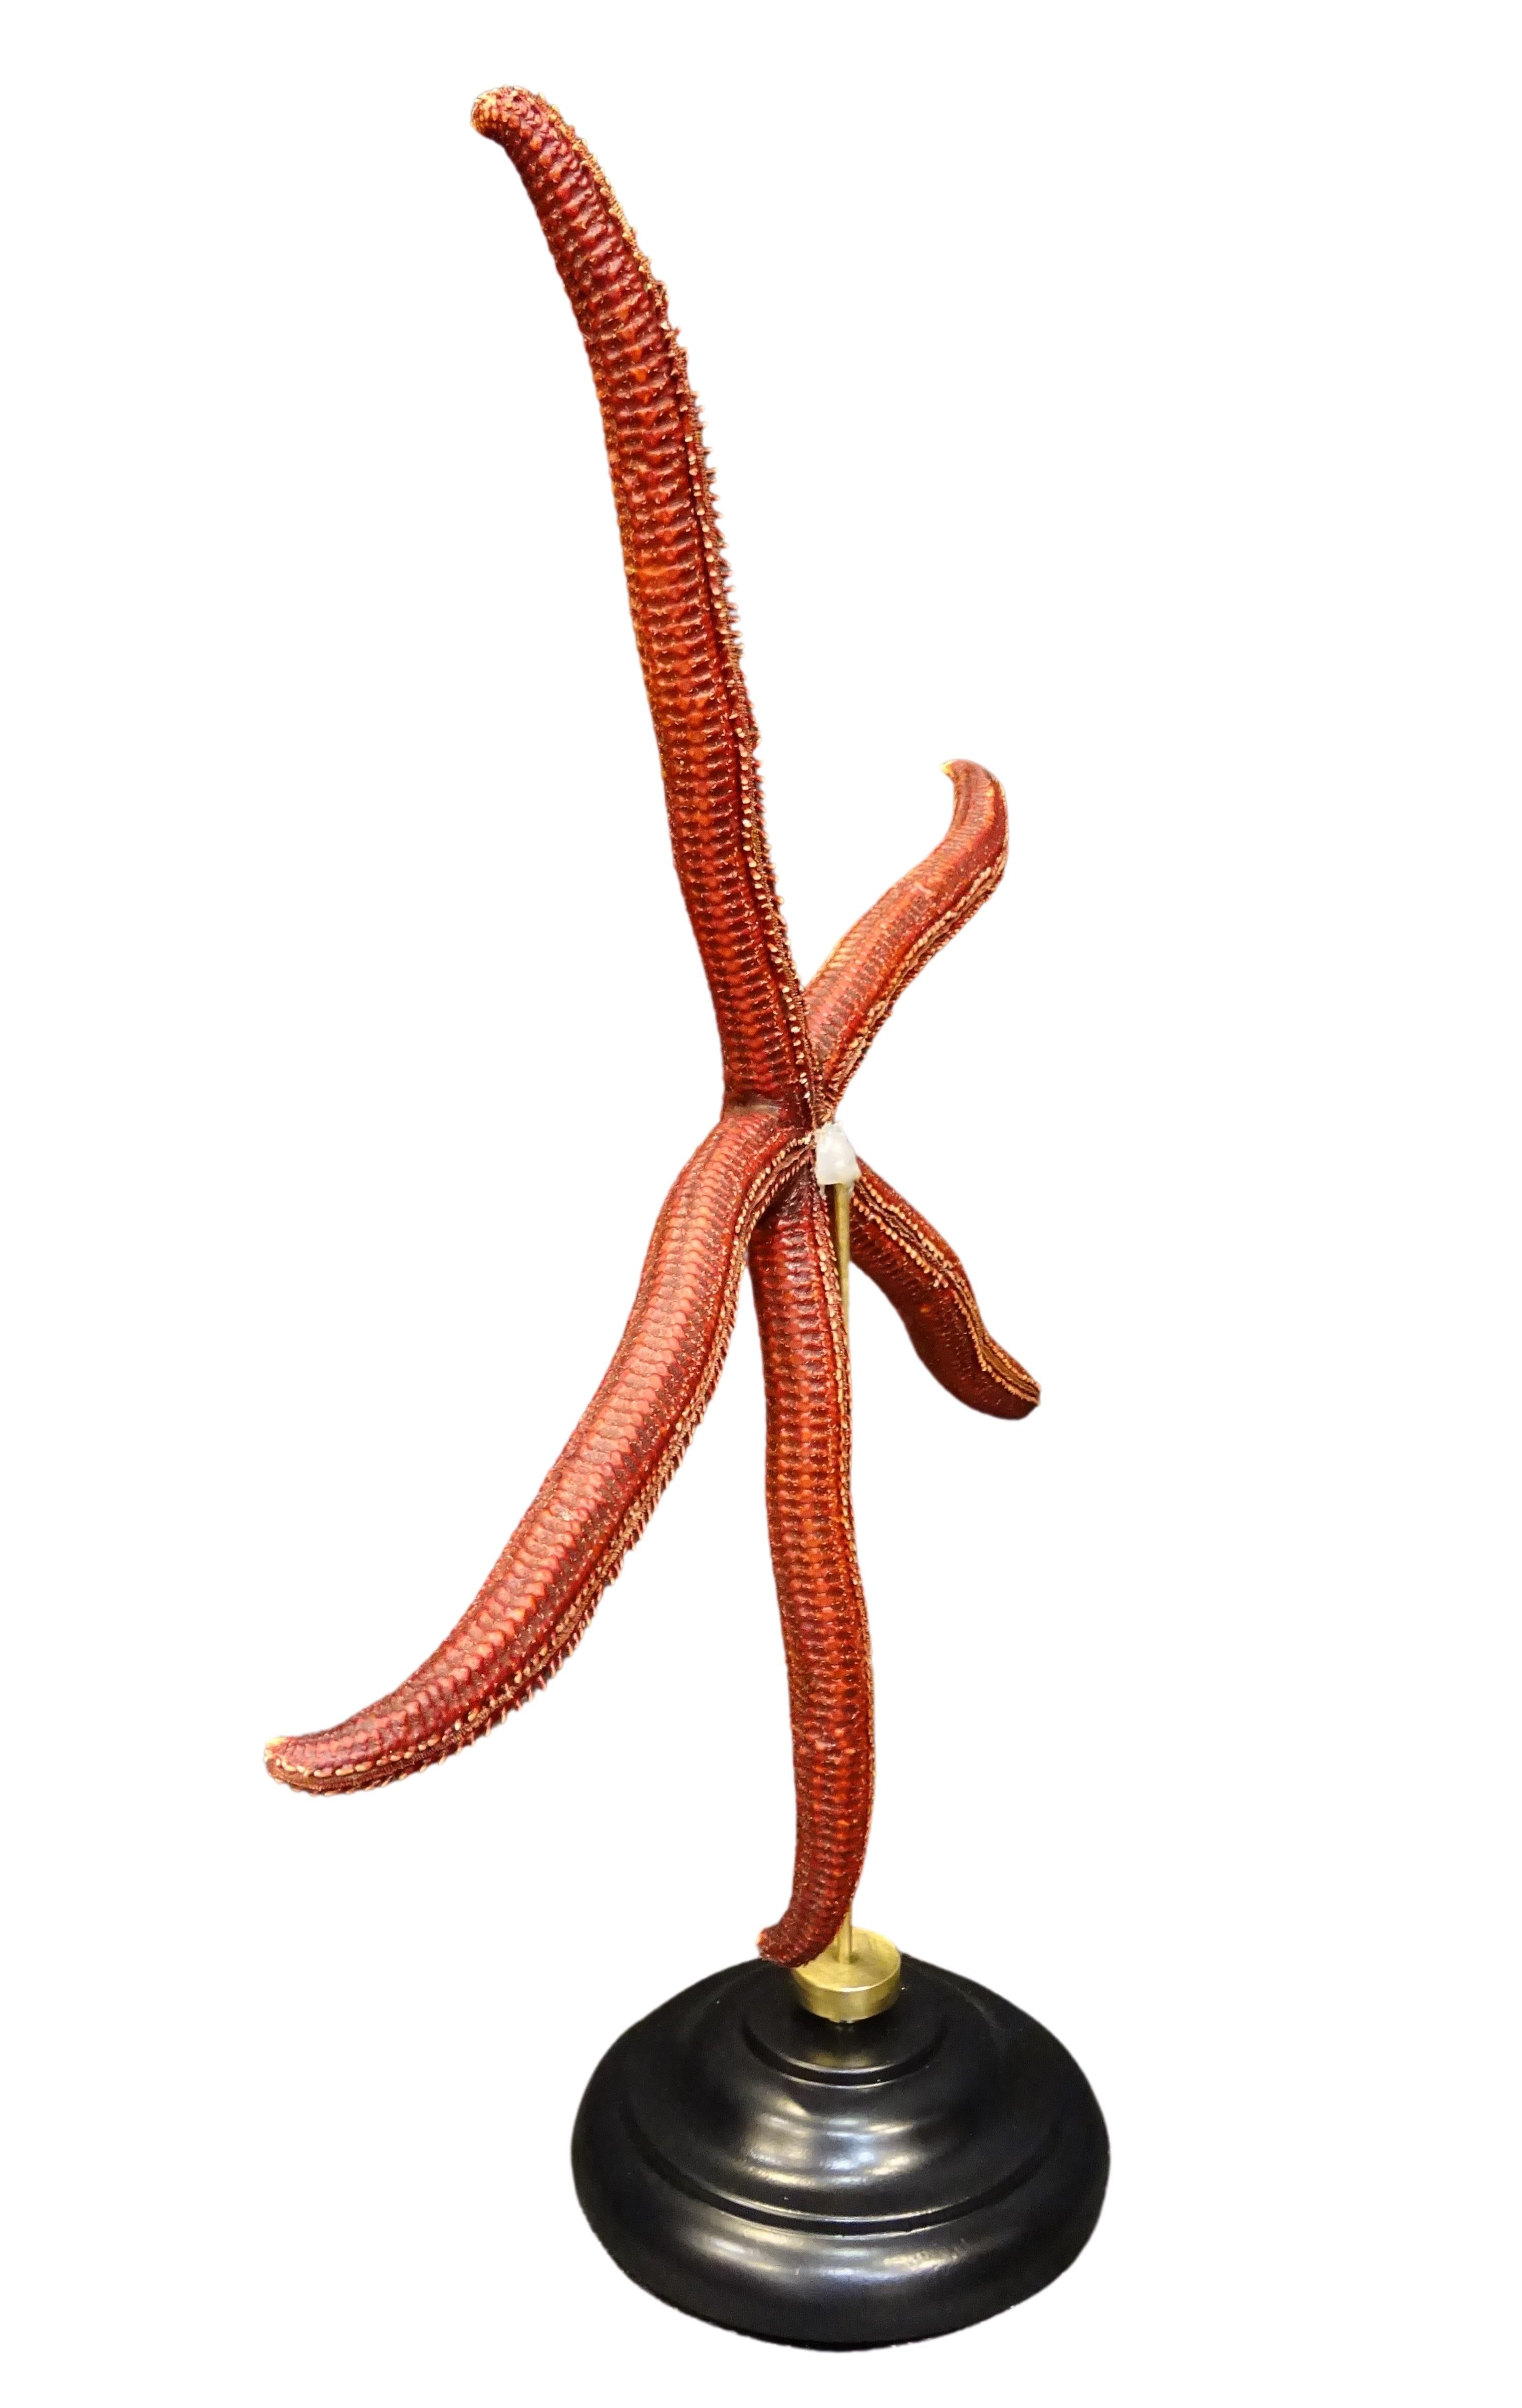 Ophidiaster ophidianus, Maße: 495 × 418 × 140 mm, Gewicht 576 g
2018, Pazifischer Ozean
Rote Seesterne in Übergröße!
Ein fantastisches Exemplar von Ophidiaster ophidianus, das auf den Salomonen gefangen wurde, wurde getrocknet und dann auf einen